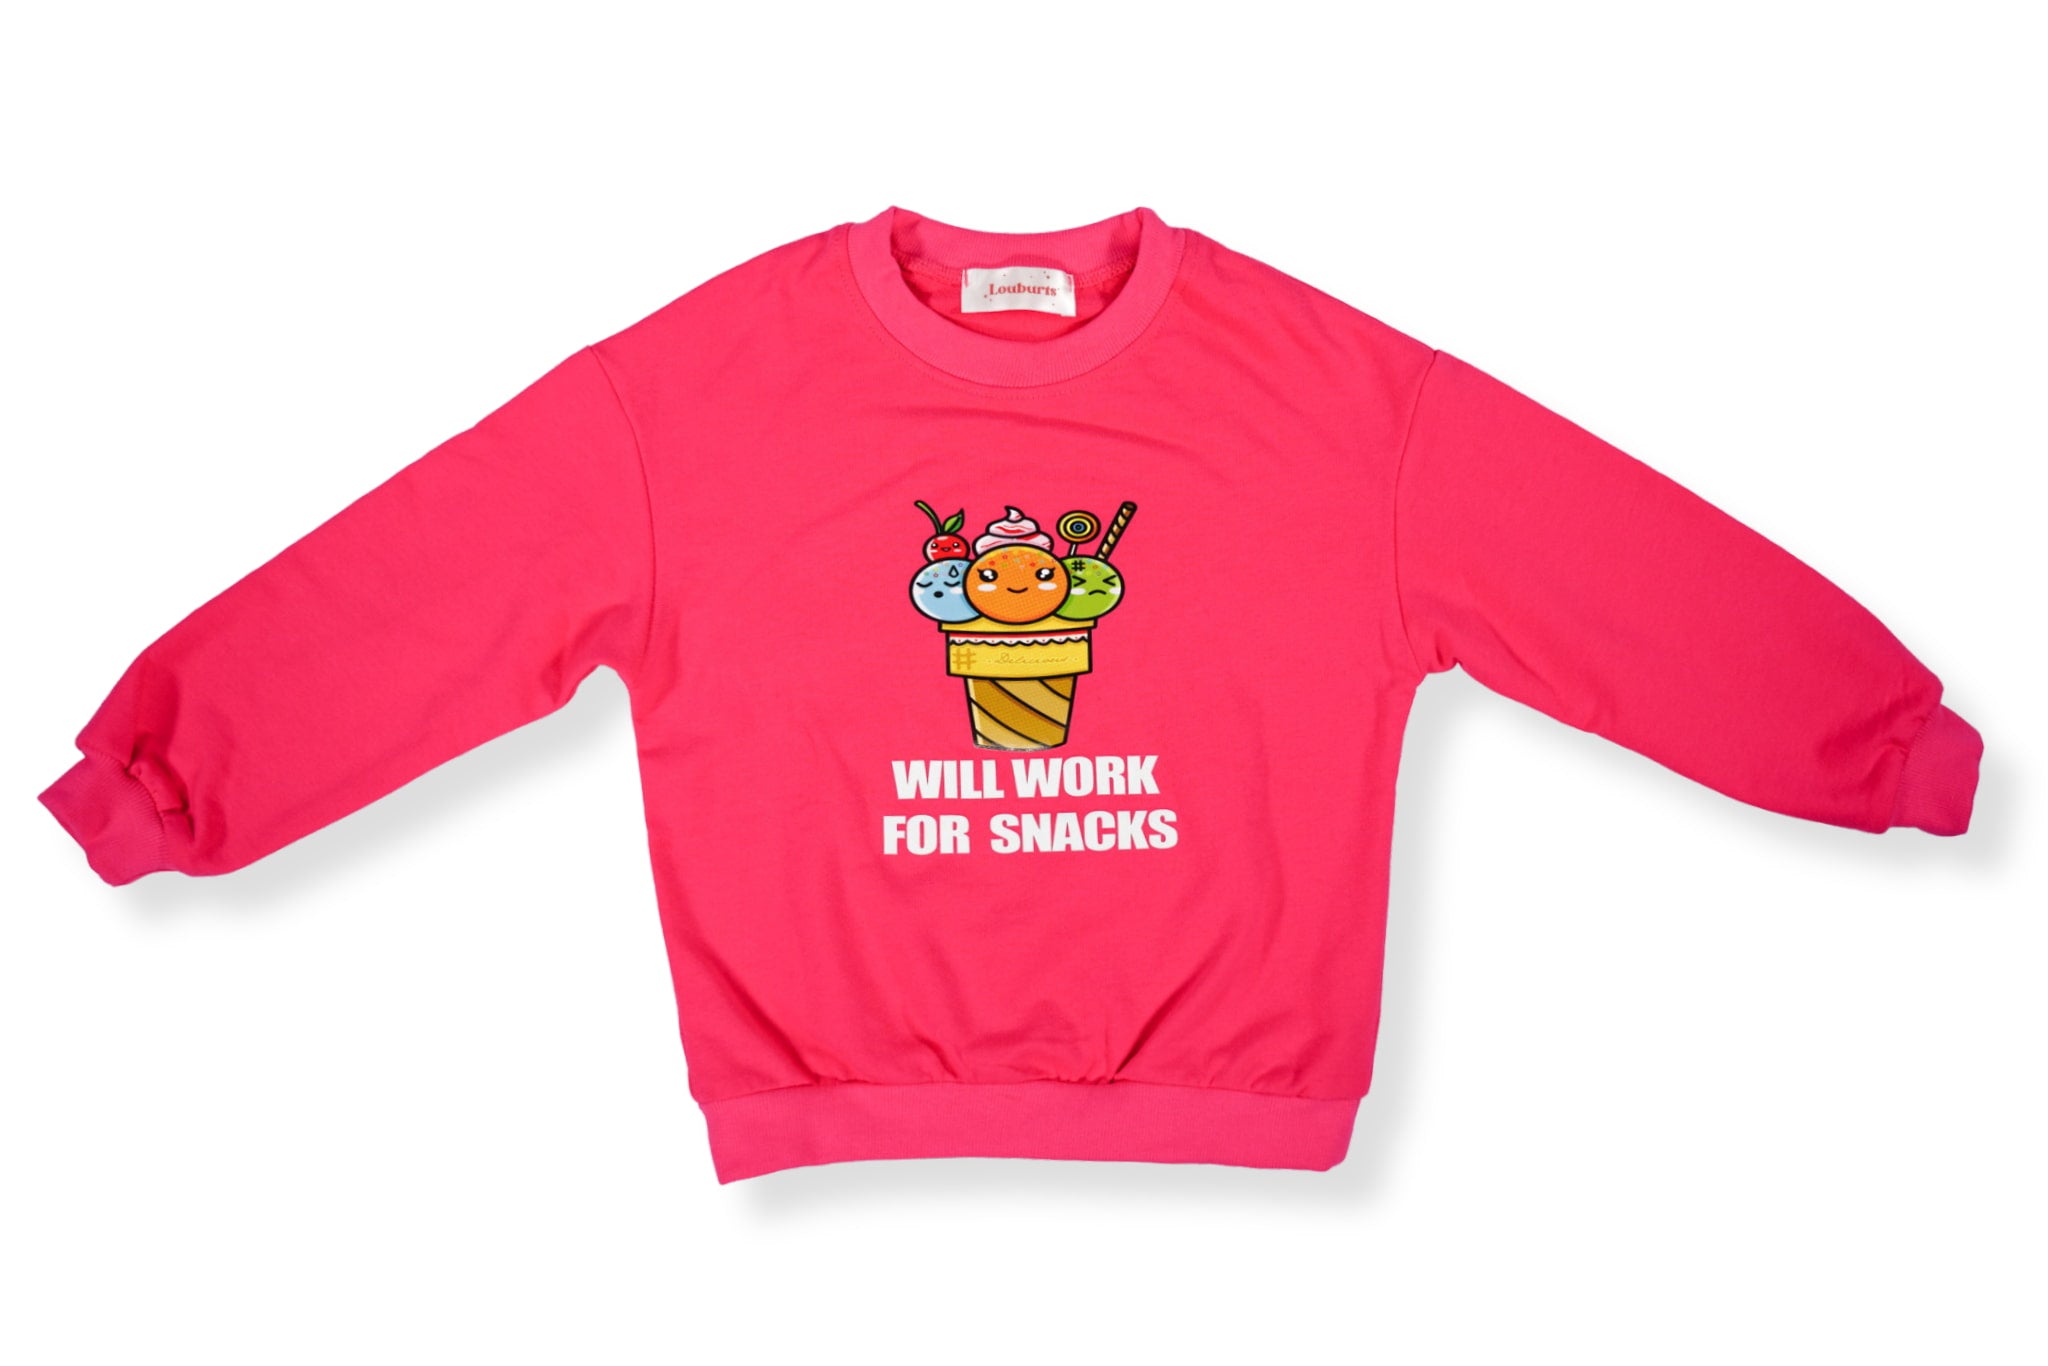 The Worker Sweatshirt for kids